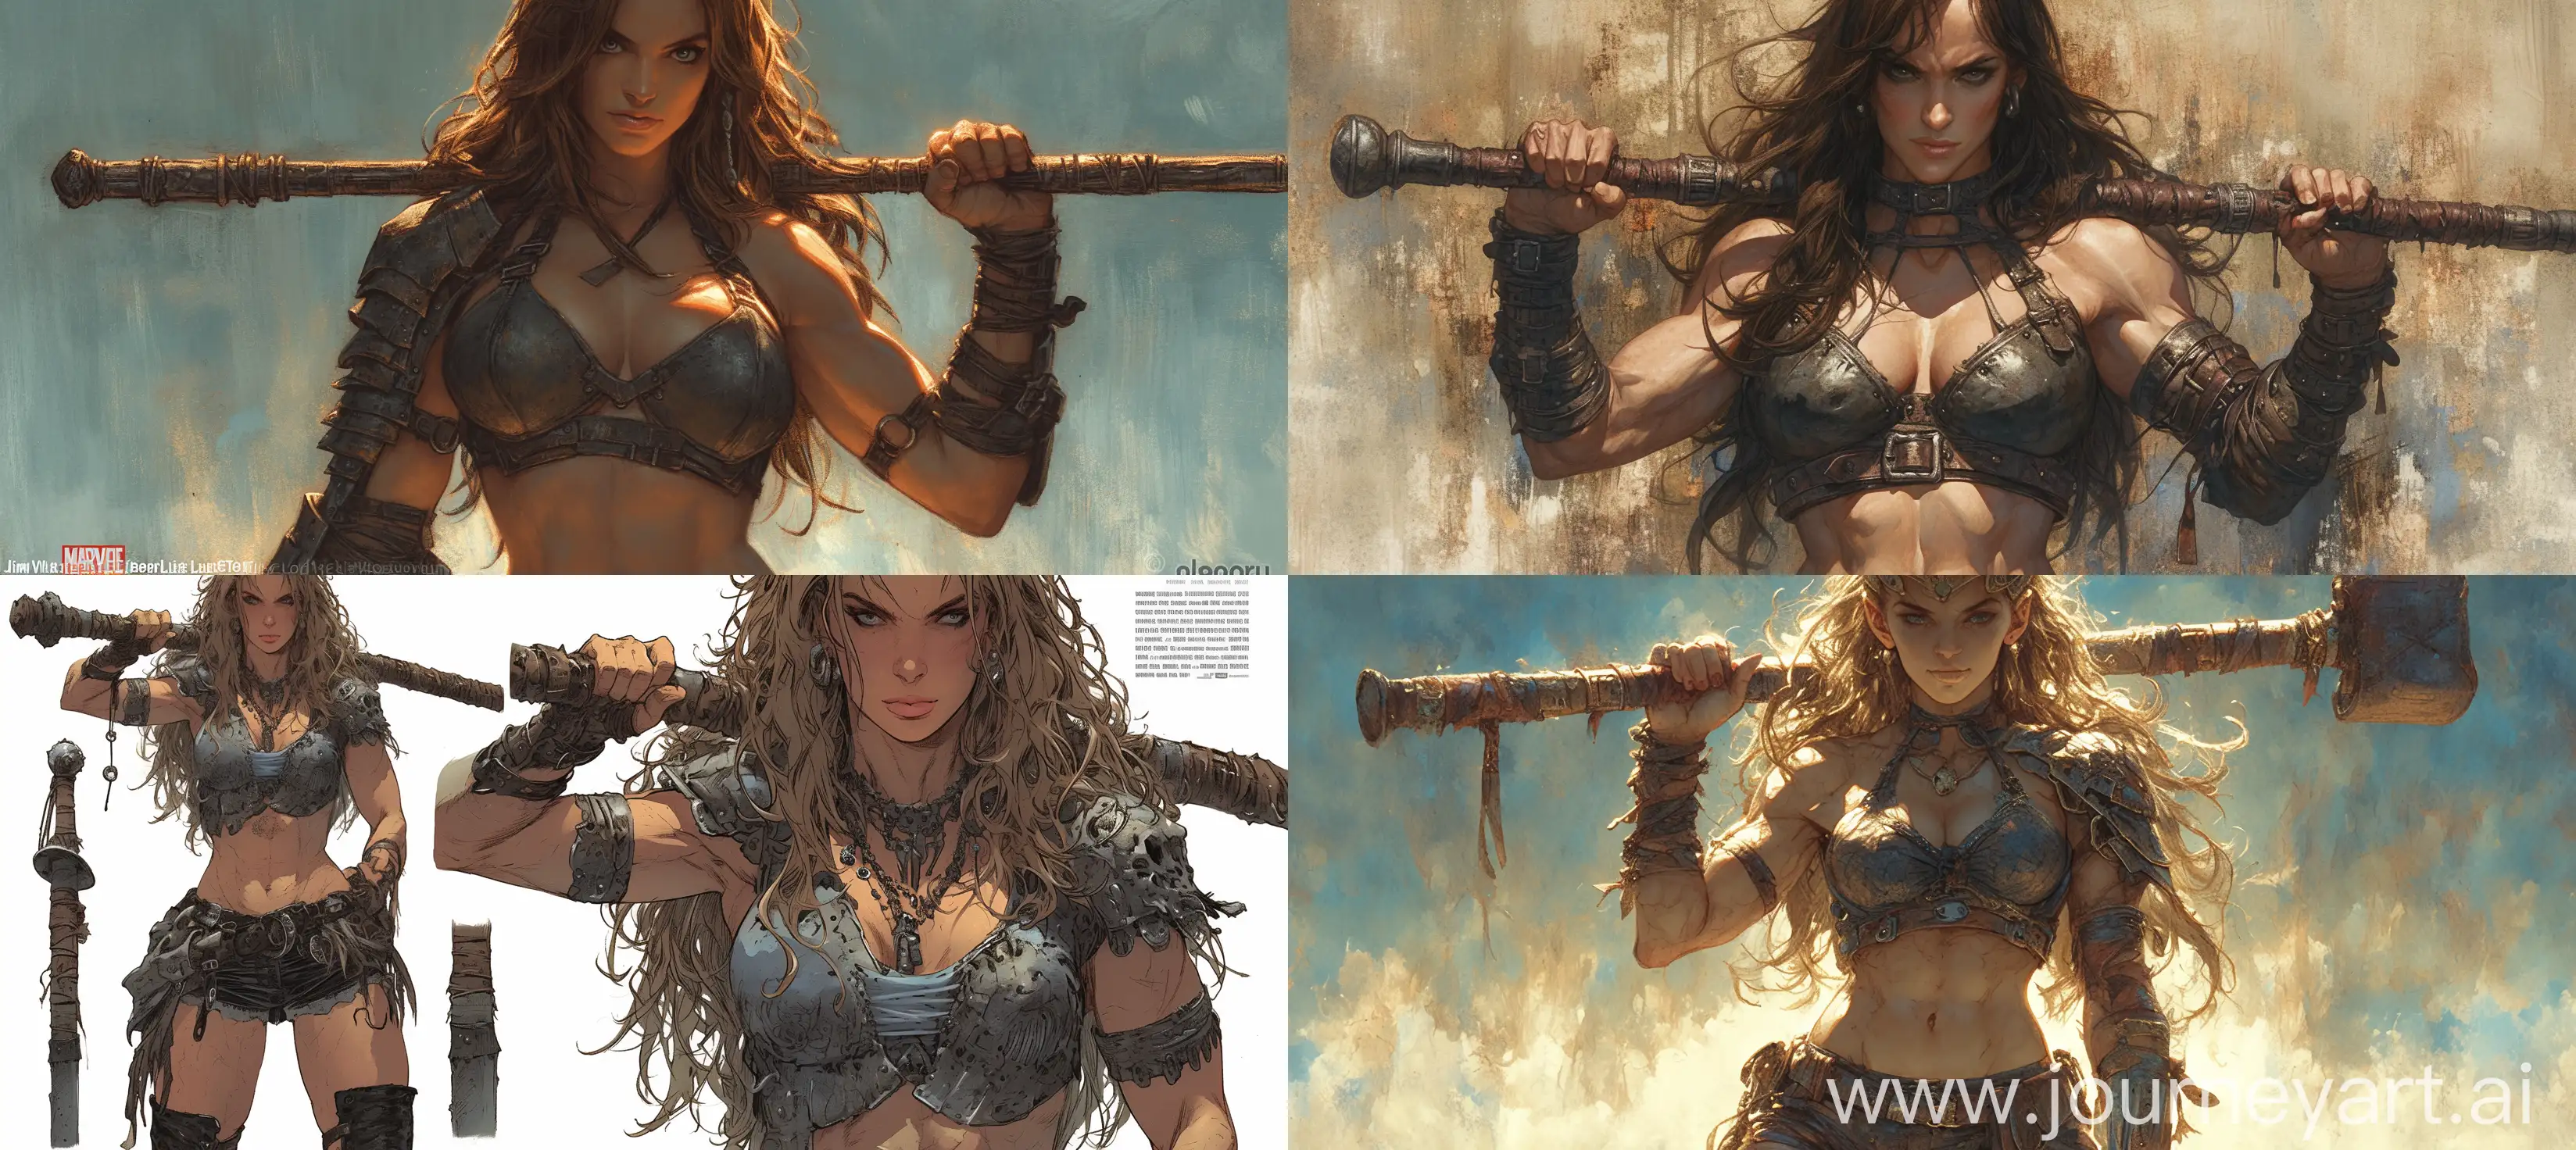 Exquisite-Warrior-Queen-Pirate-in-MetalClad-Costume